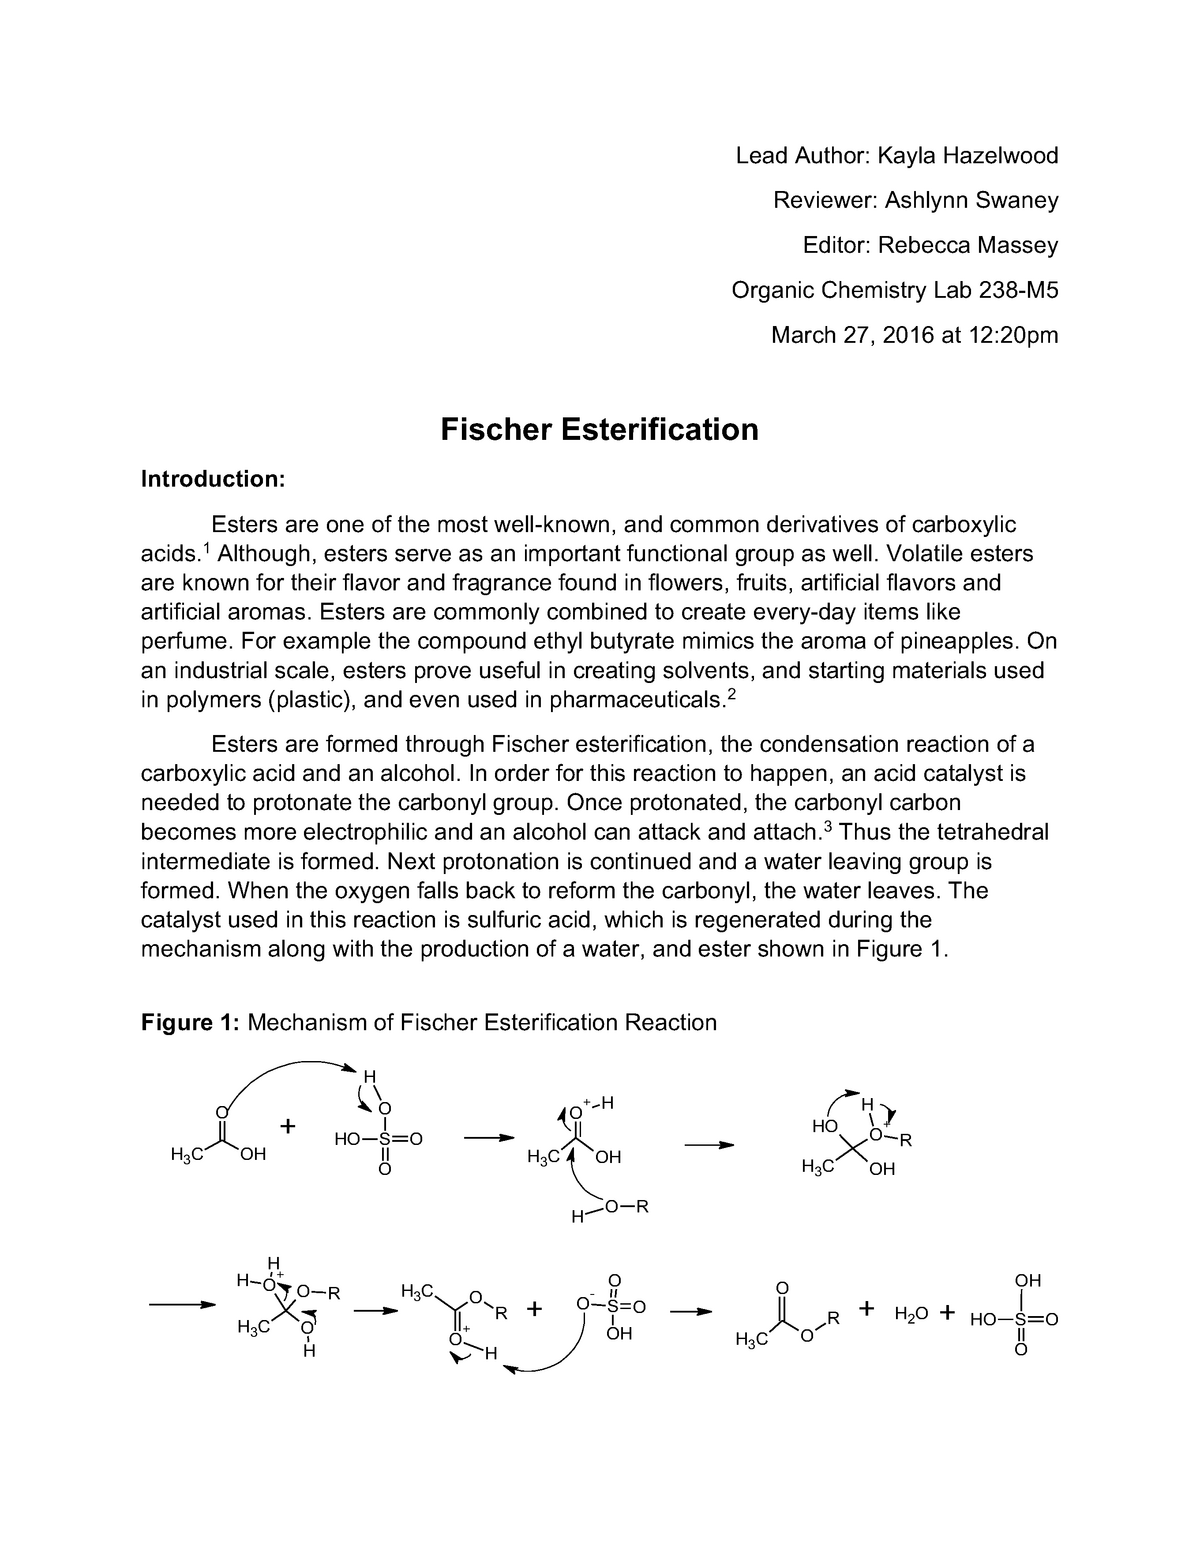 fischer esterification mechanism